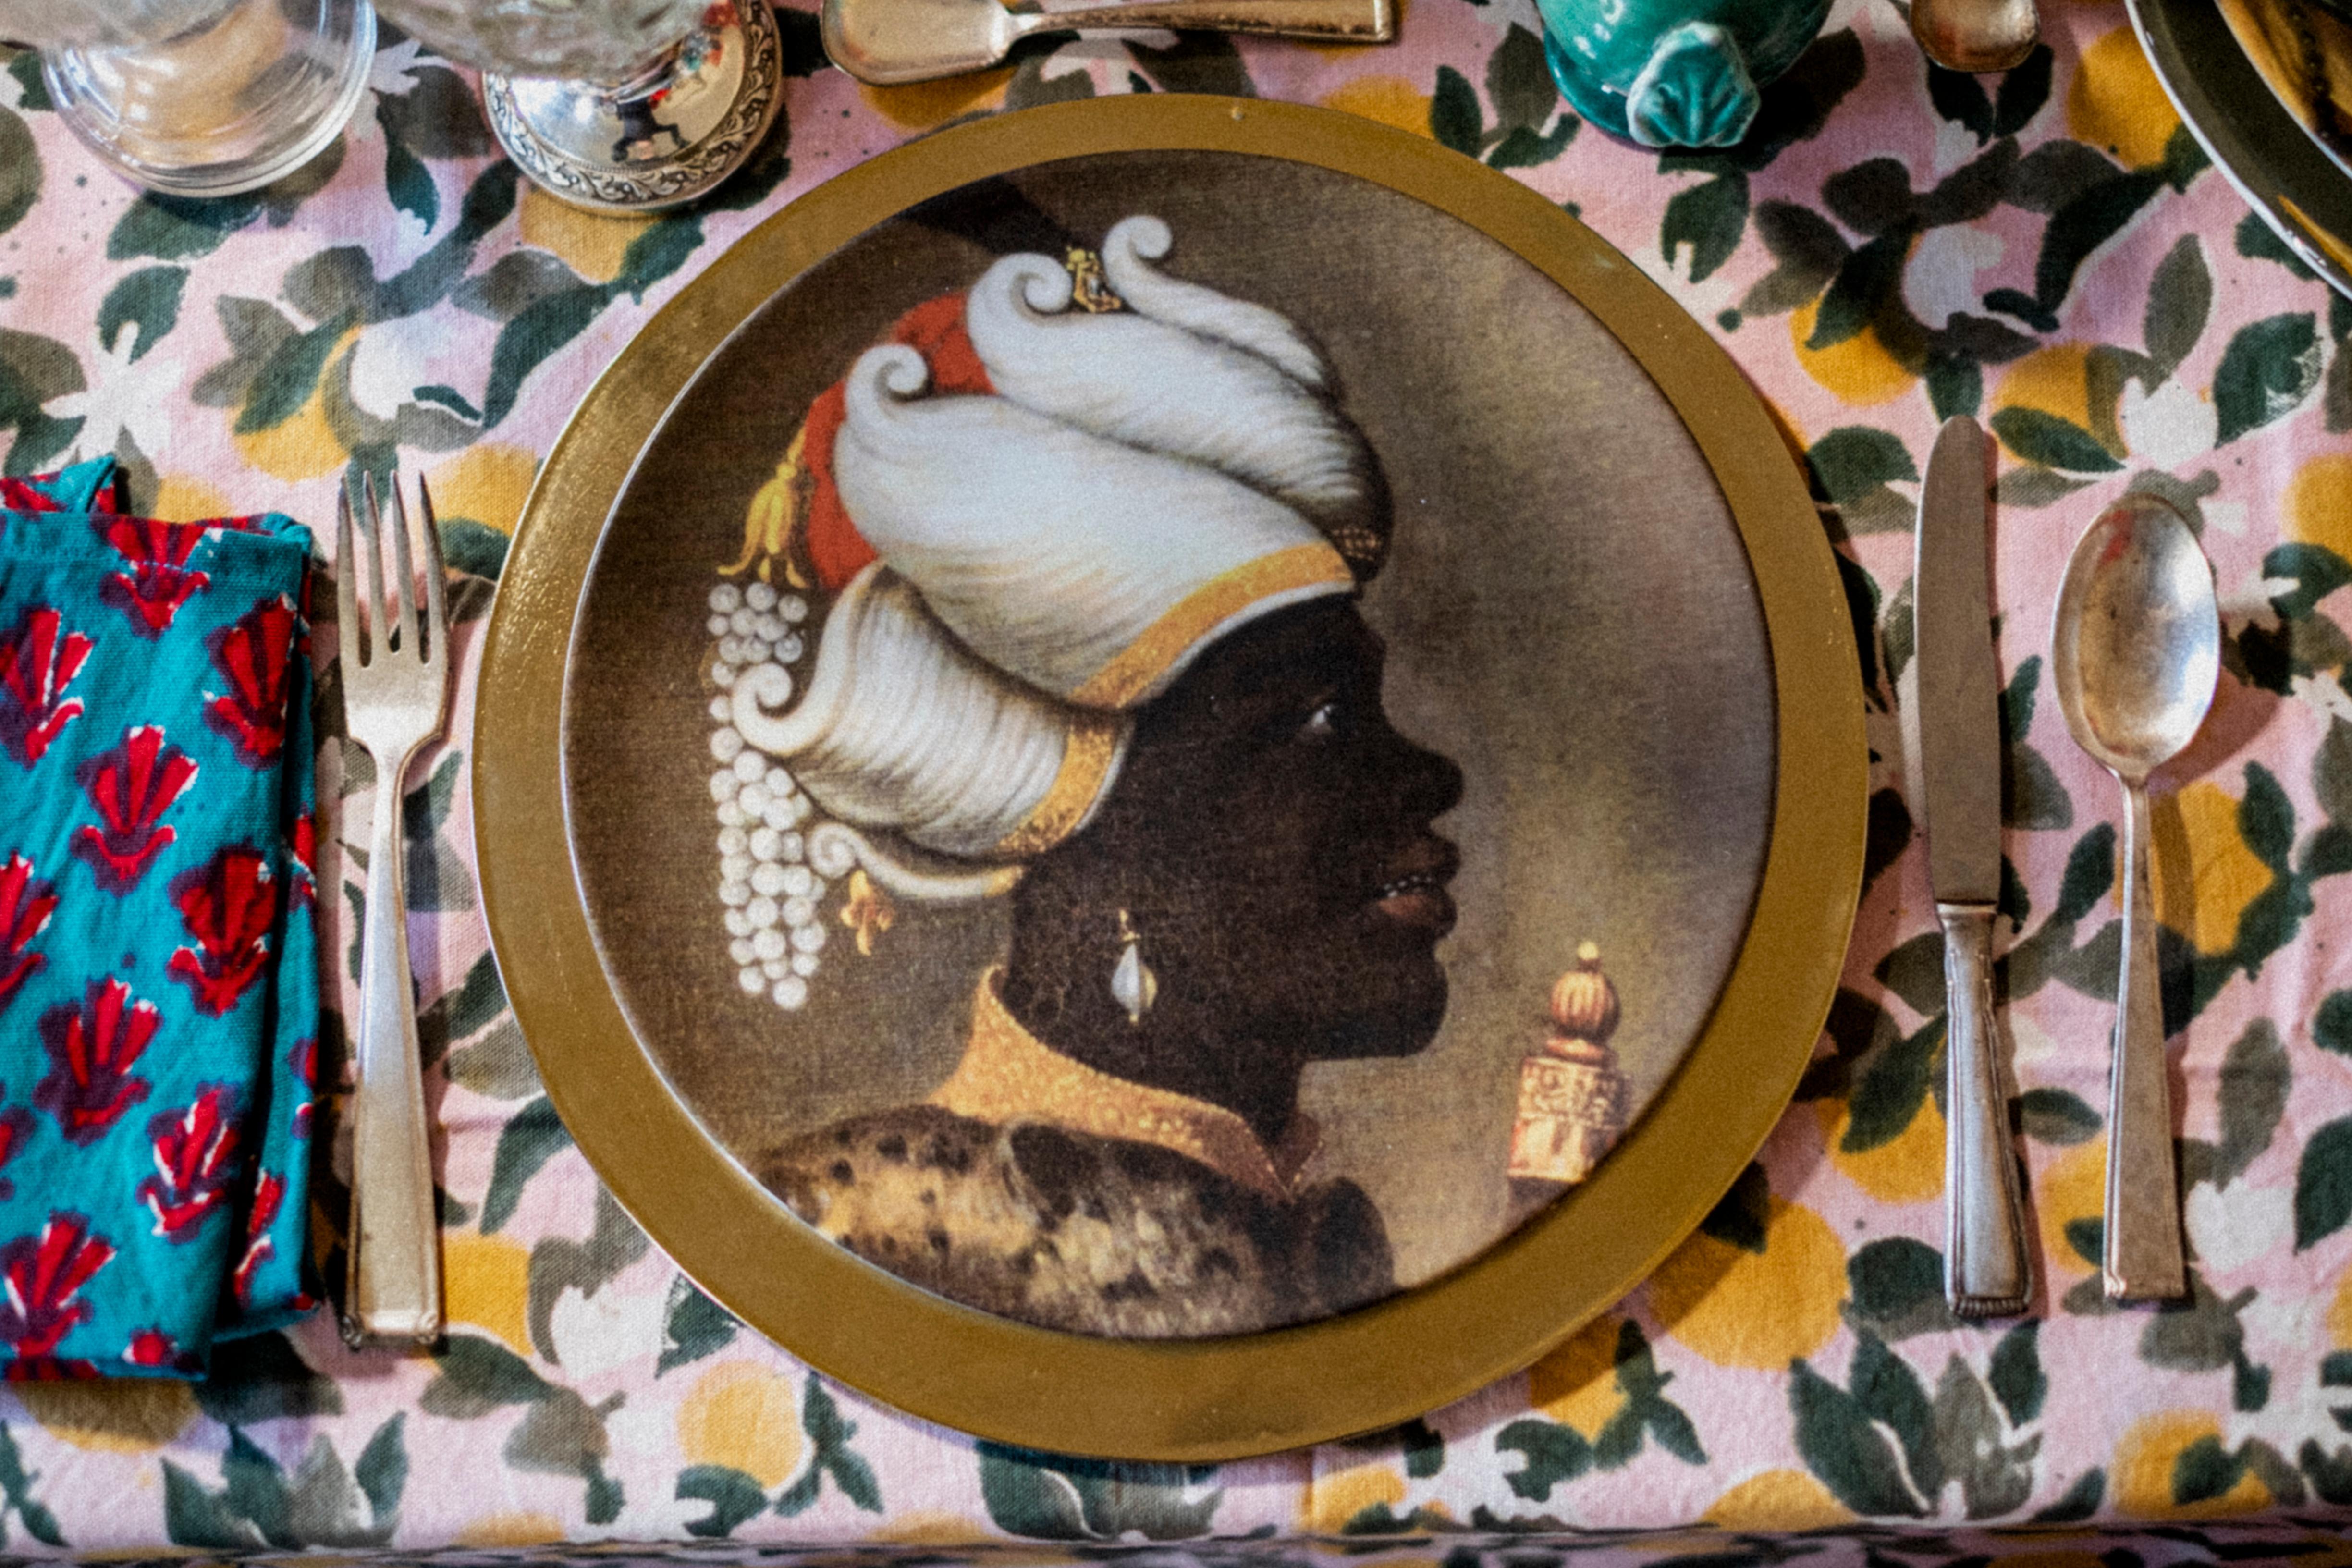 En suivant le chemin de l'histoire ottomane, voici un portrait d'Ottomans sur une assiette en porcelaine. 
L'élégance et l'allure de l'homme ottoman sont très bien retranscrites dans ce portrait et pourraient être facilement transposées sur vos